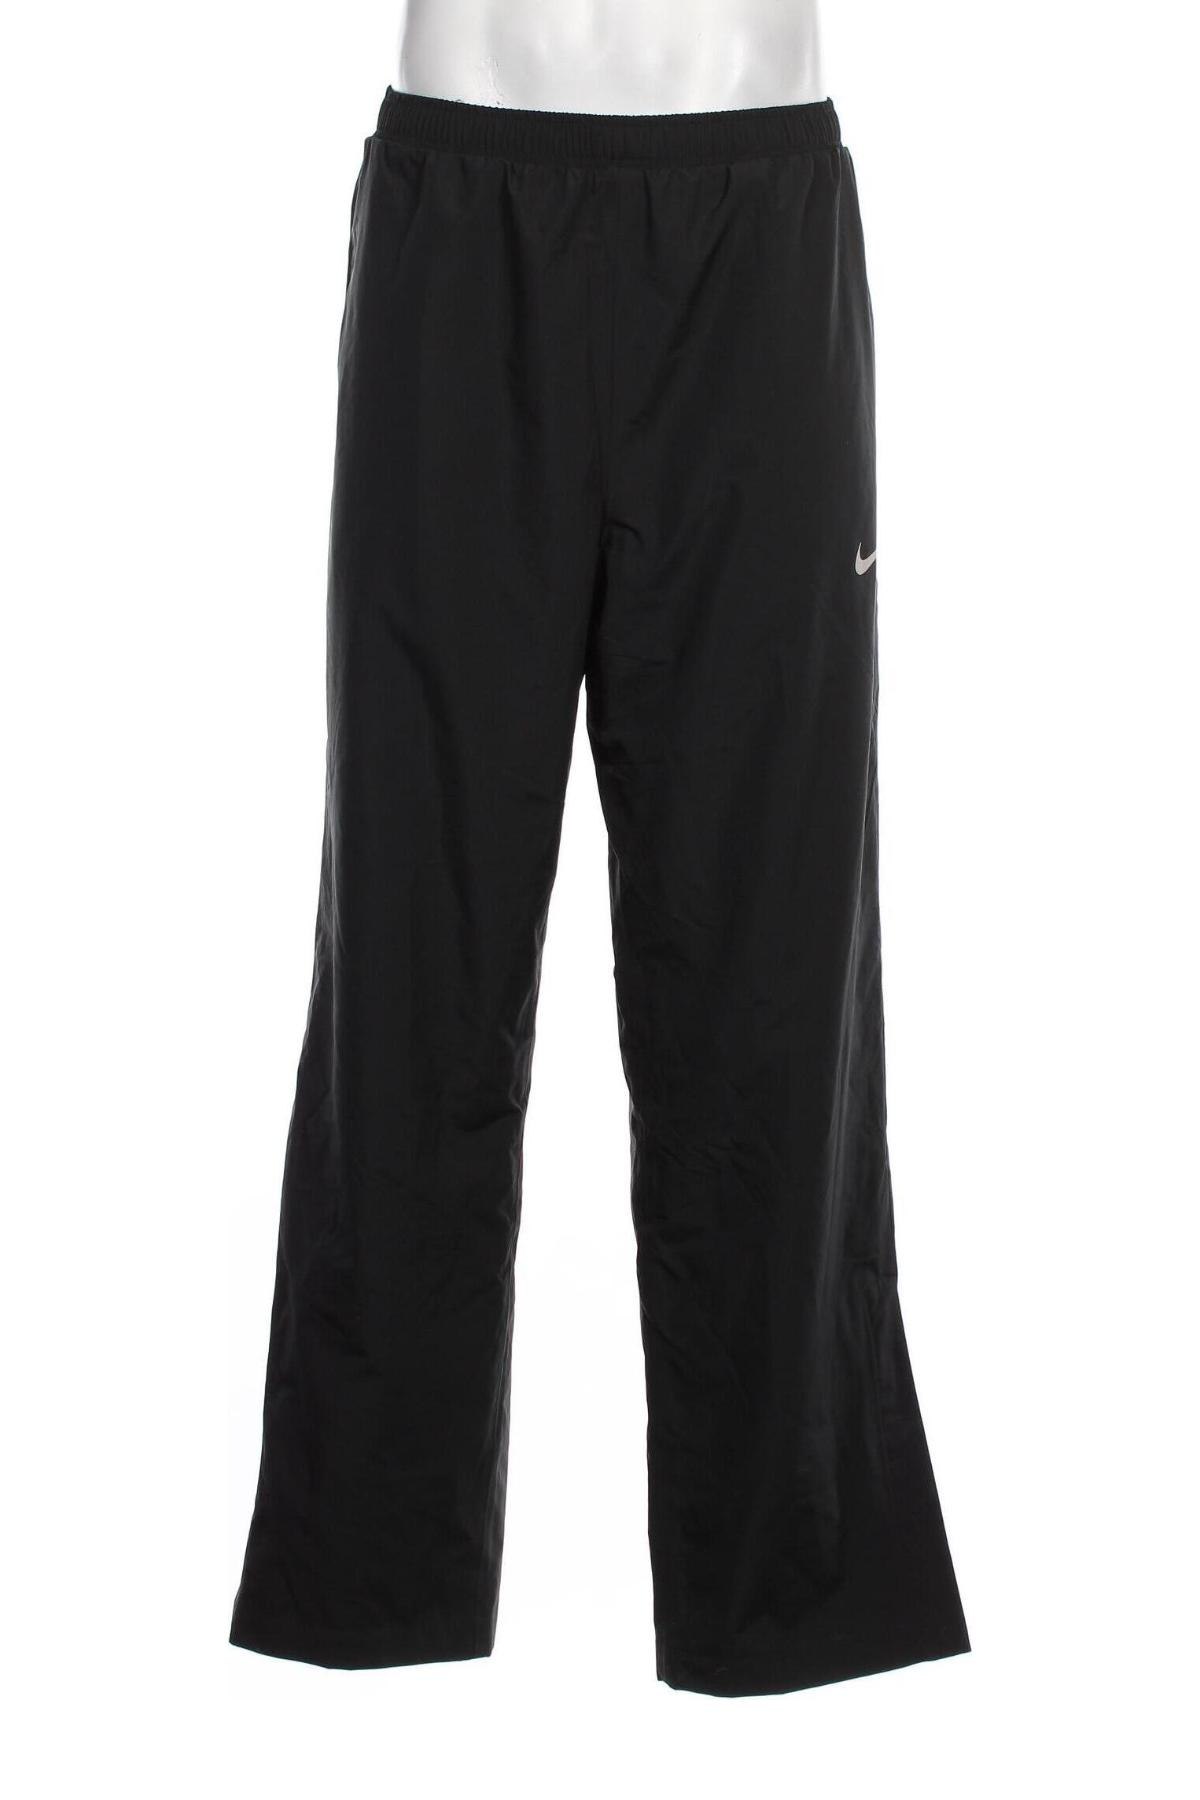 Ανδρικό αθλητικό παντελόνι Nike Golf, Μέγεθος L, Χρώμα Μαύρο, Τιμή 40,90 €